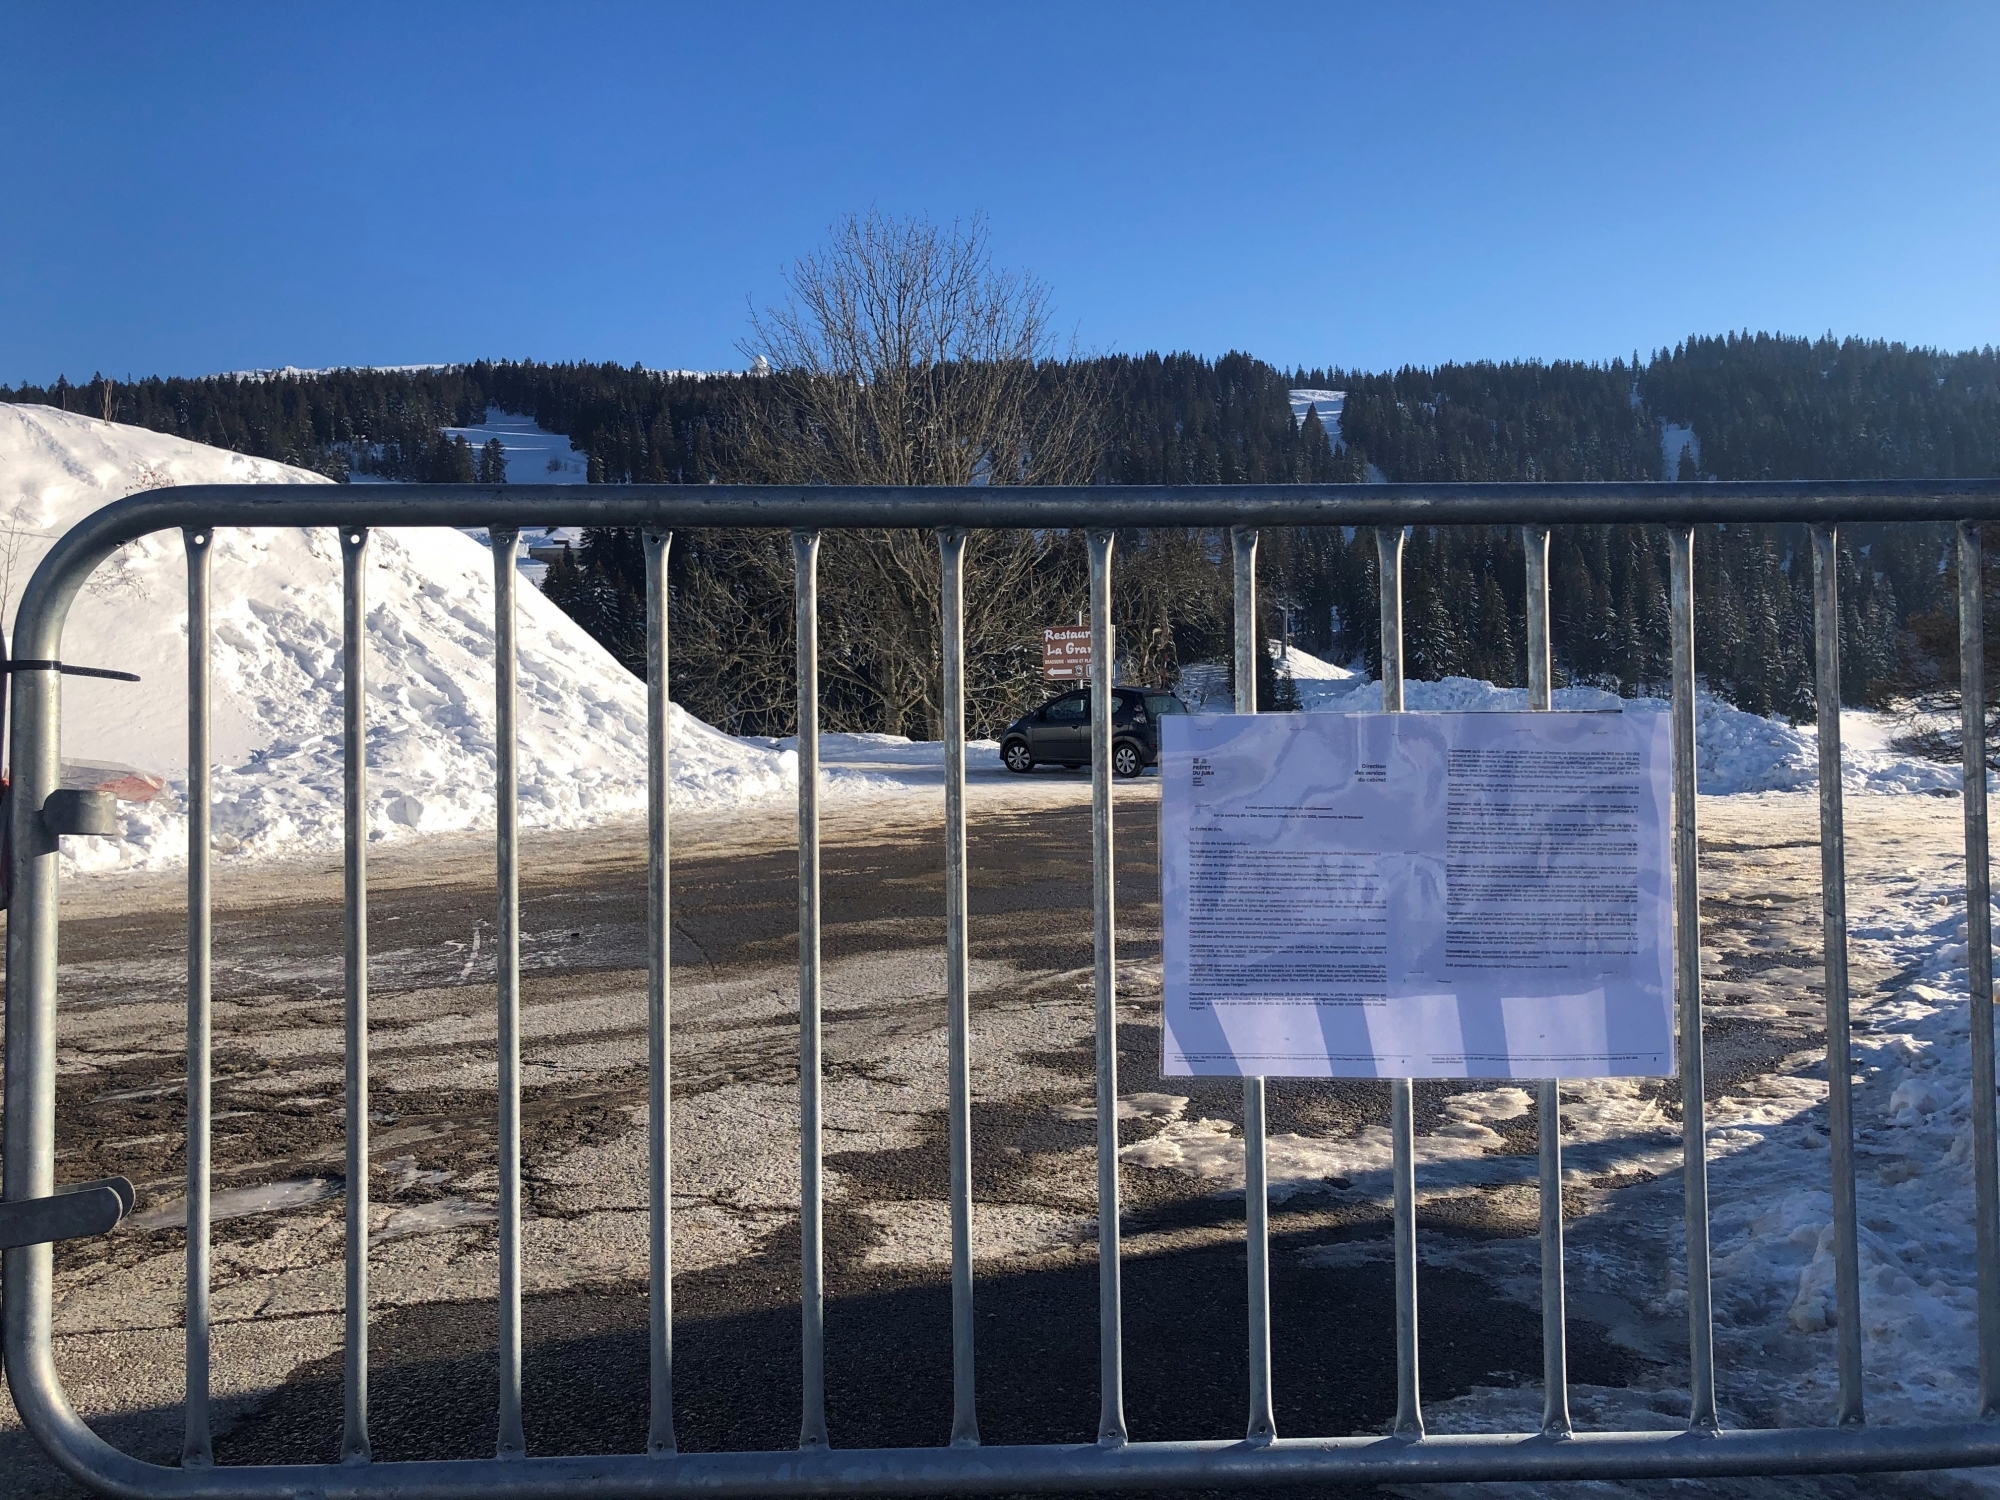 Des barrières vauban, sur lesquelles est affichée une copie du premier arrêté préfectoral du 29 décembre 2020, entravent l'accès au parking des Dappes, donc au domaine skiable suisse de la Dôle.